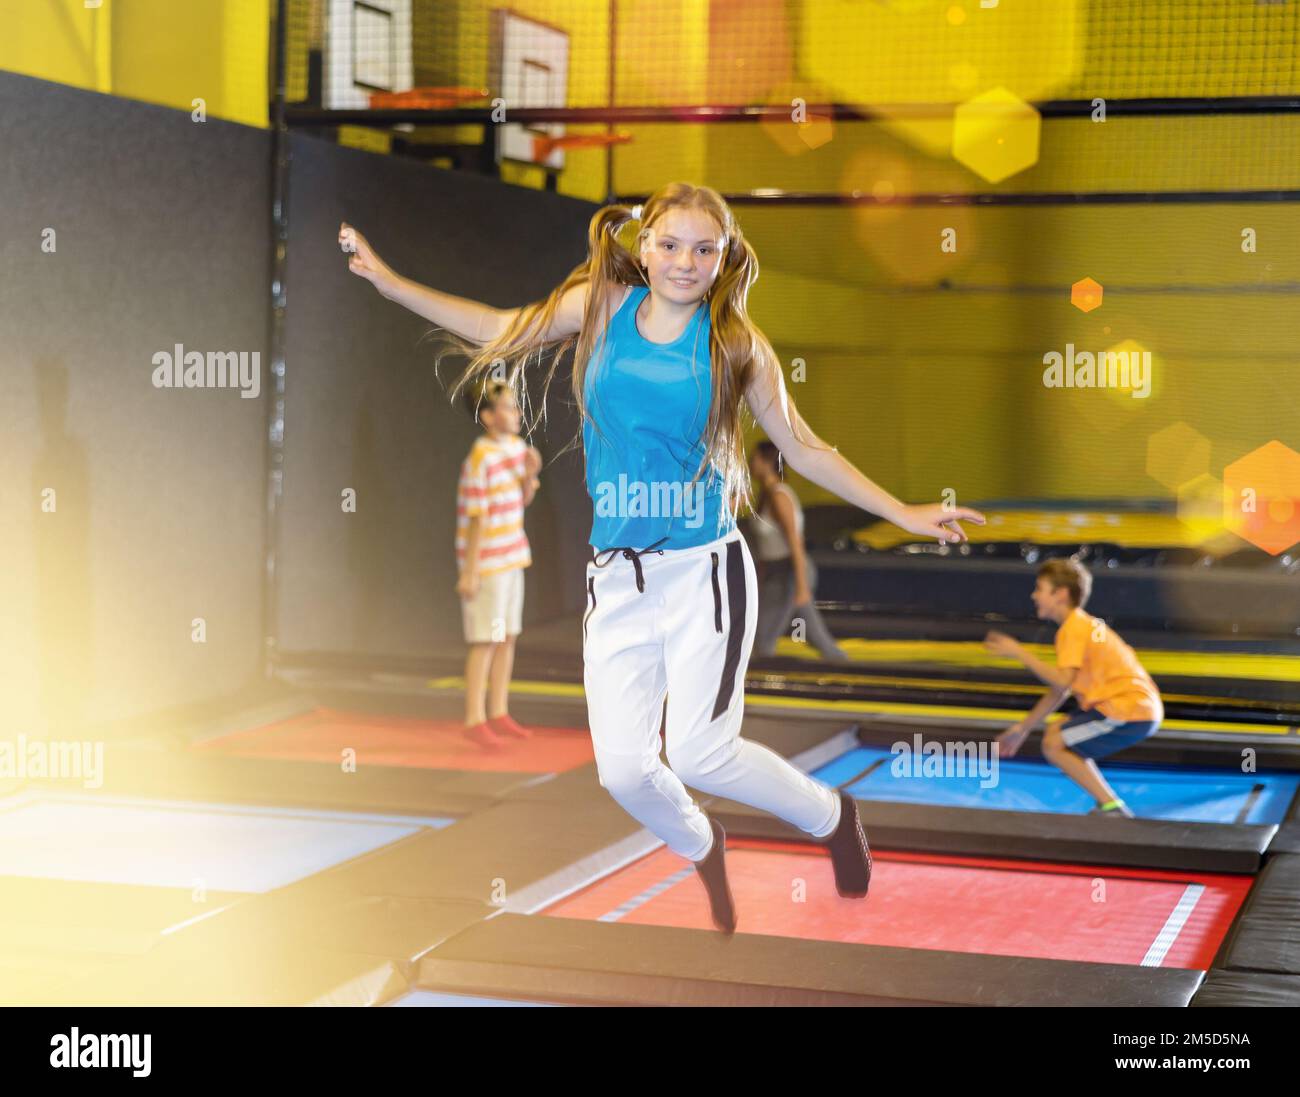 Ein Mädchen, das im Sportzentrum auf dem Trampolinpark springt Stockfoto